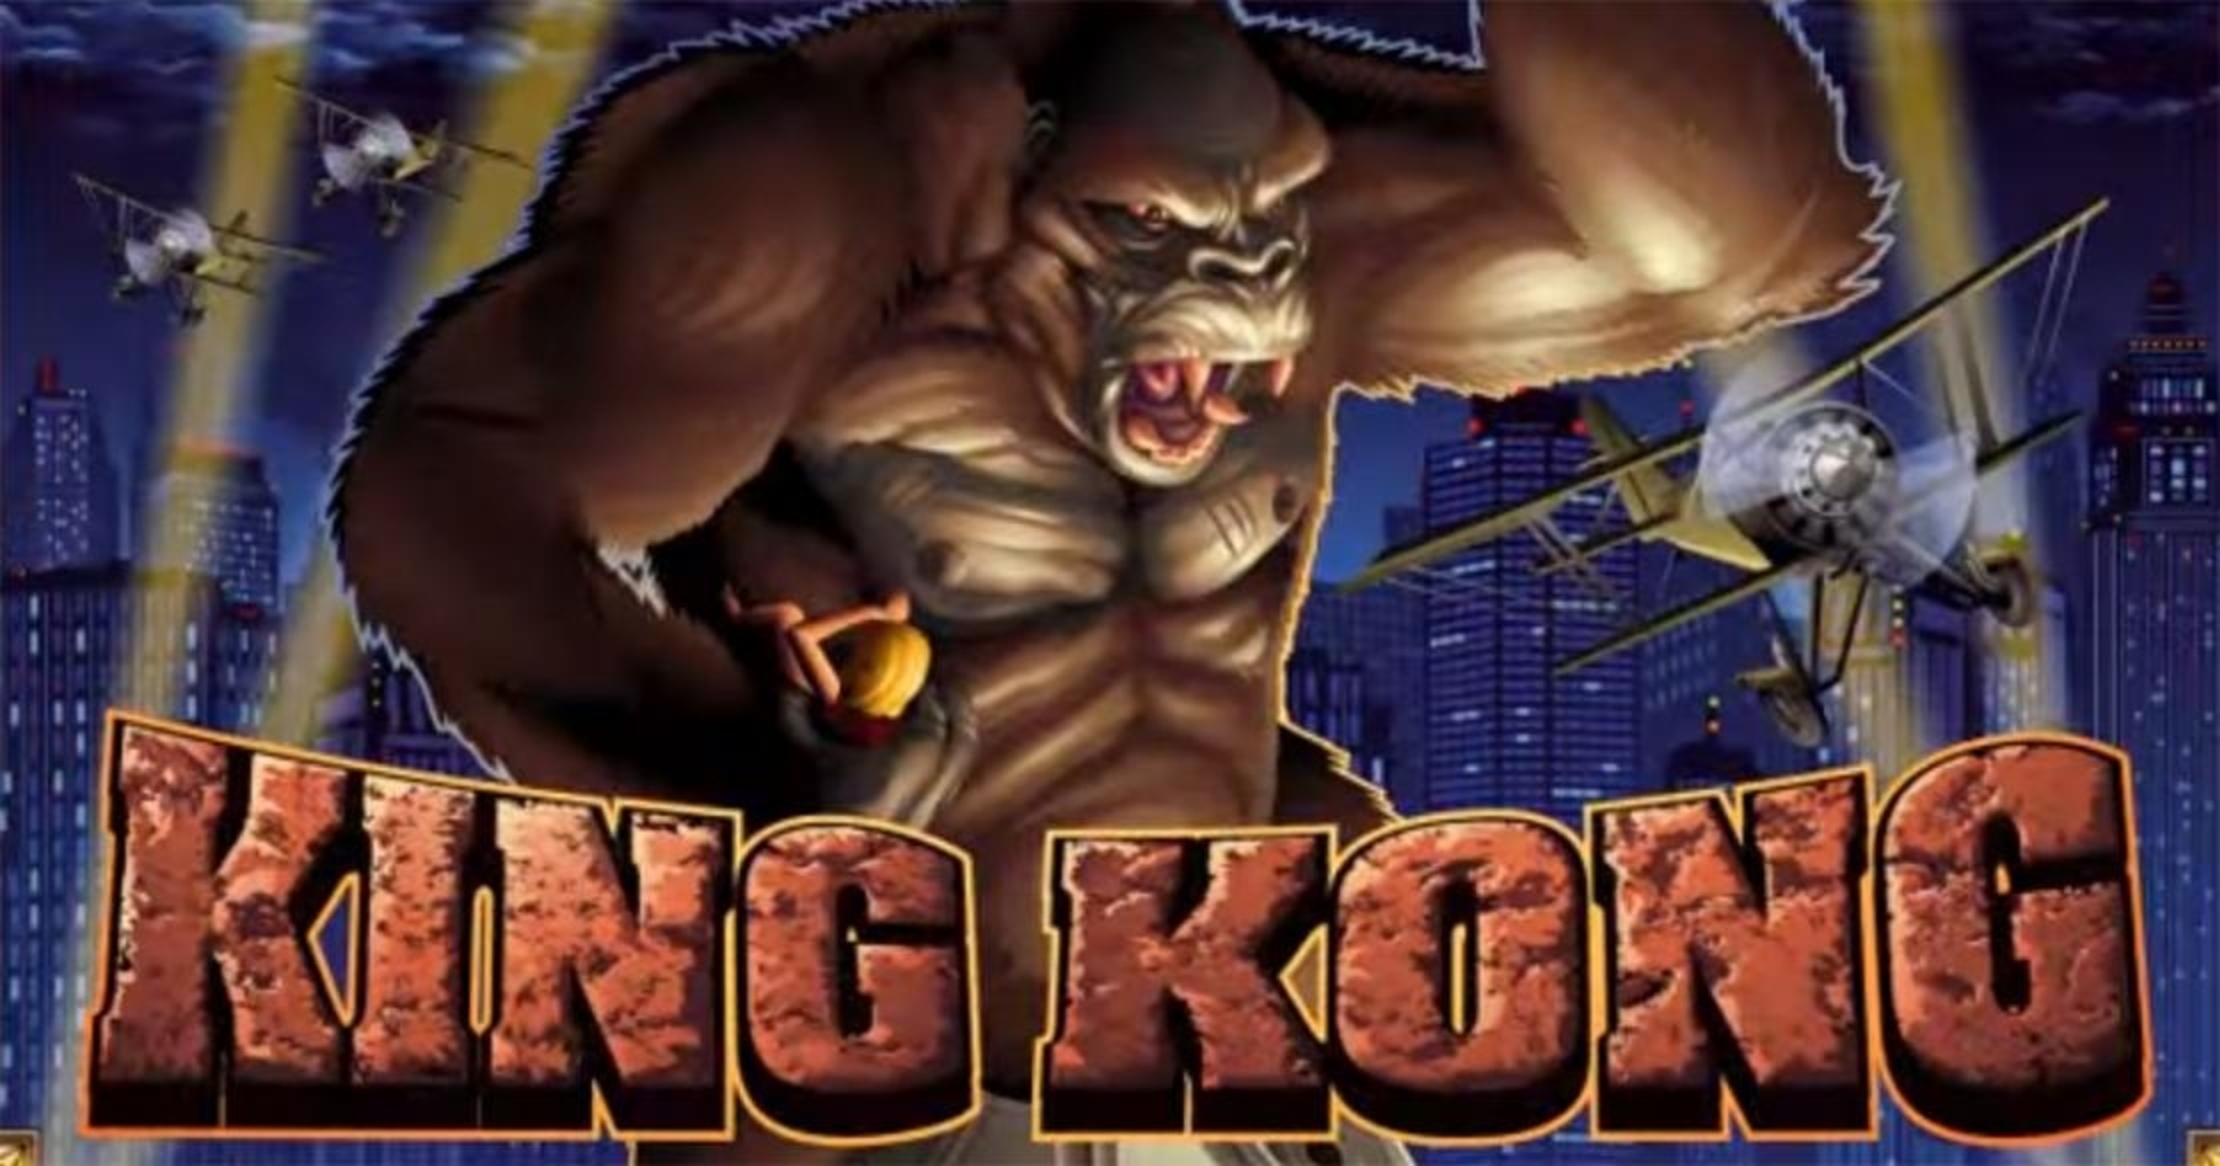 King Kong NextGen